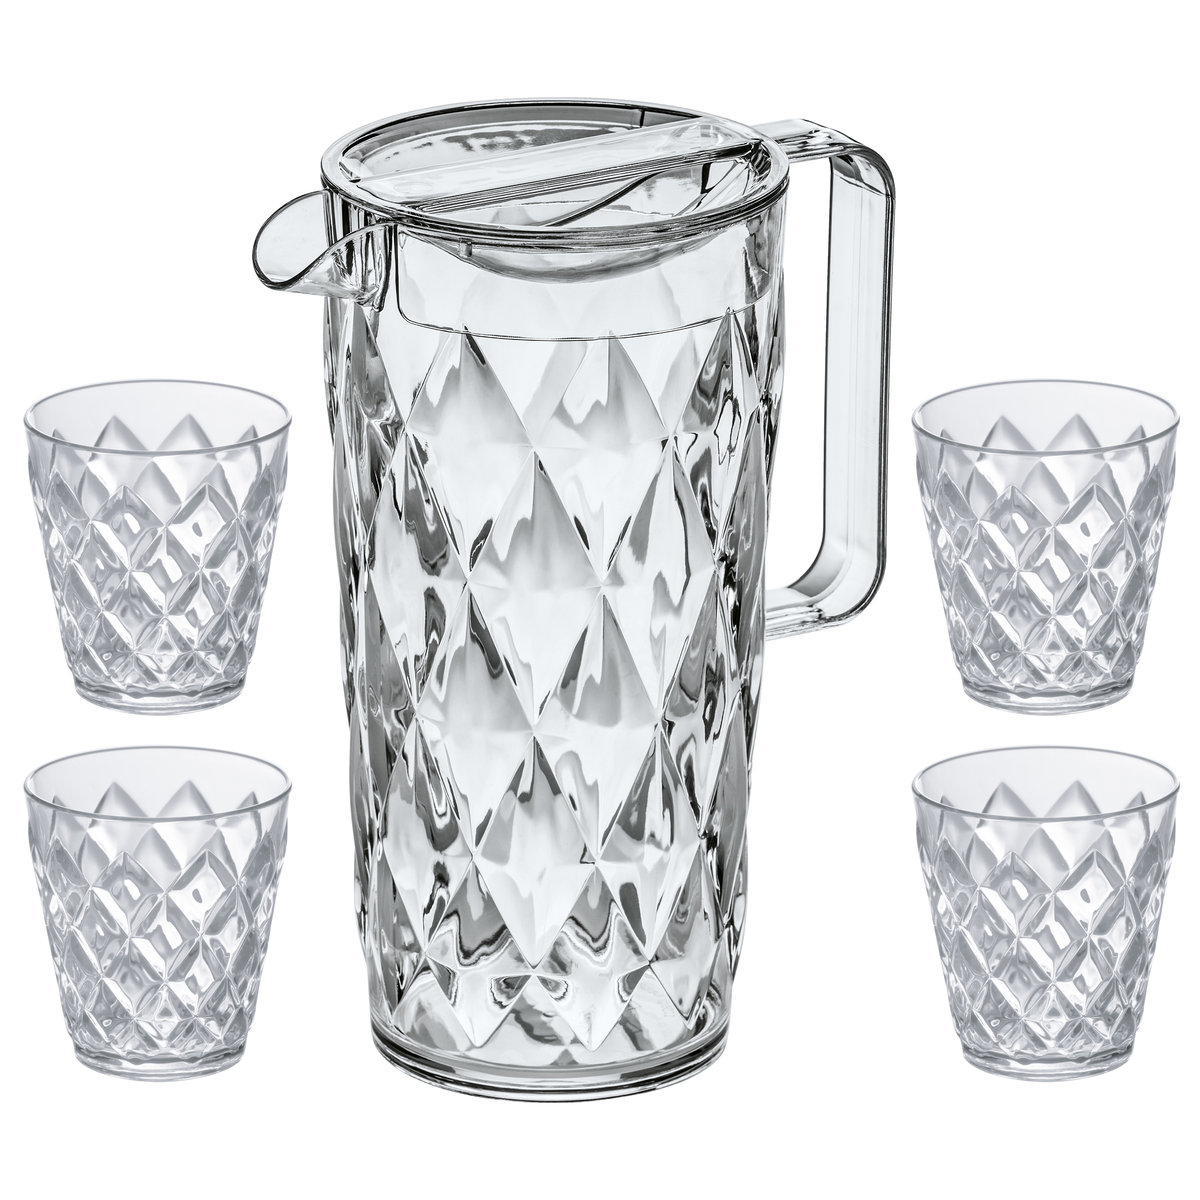 Koziol Dzbanek Crystal w zestawie z 4 szklankami 4007535